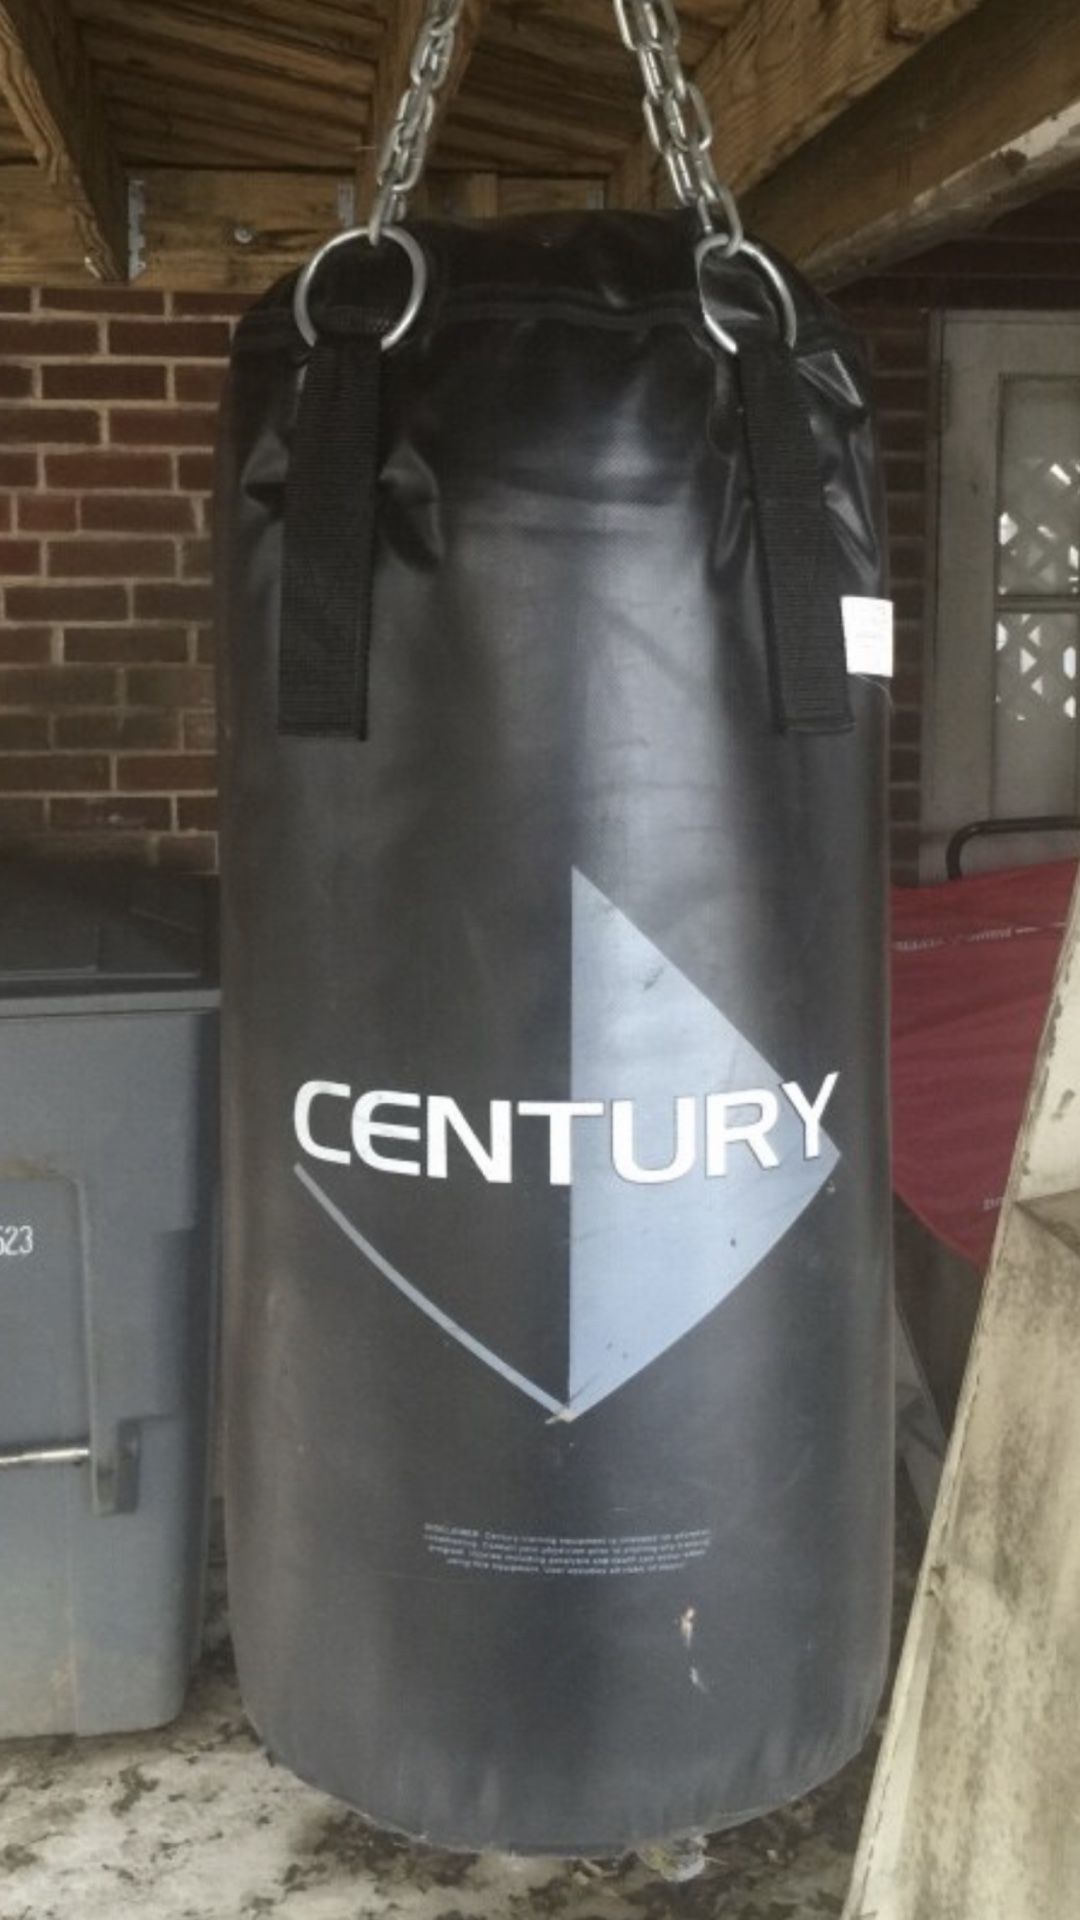 Century heavy bag